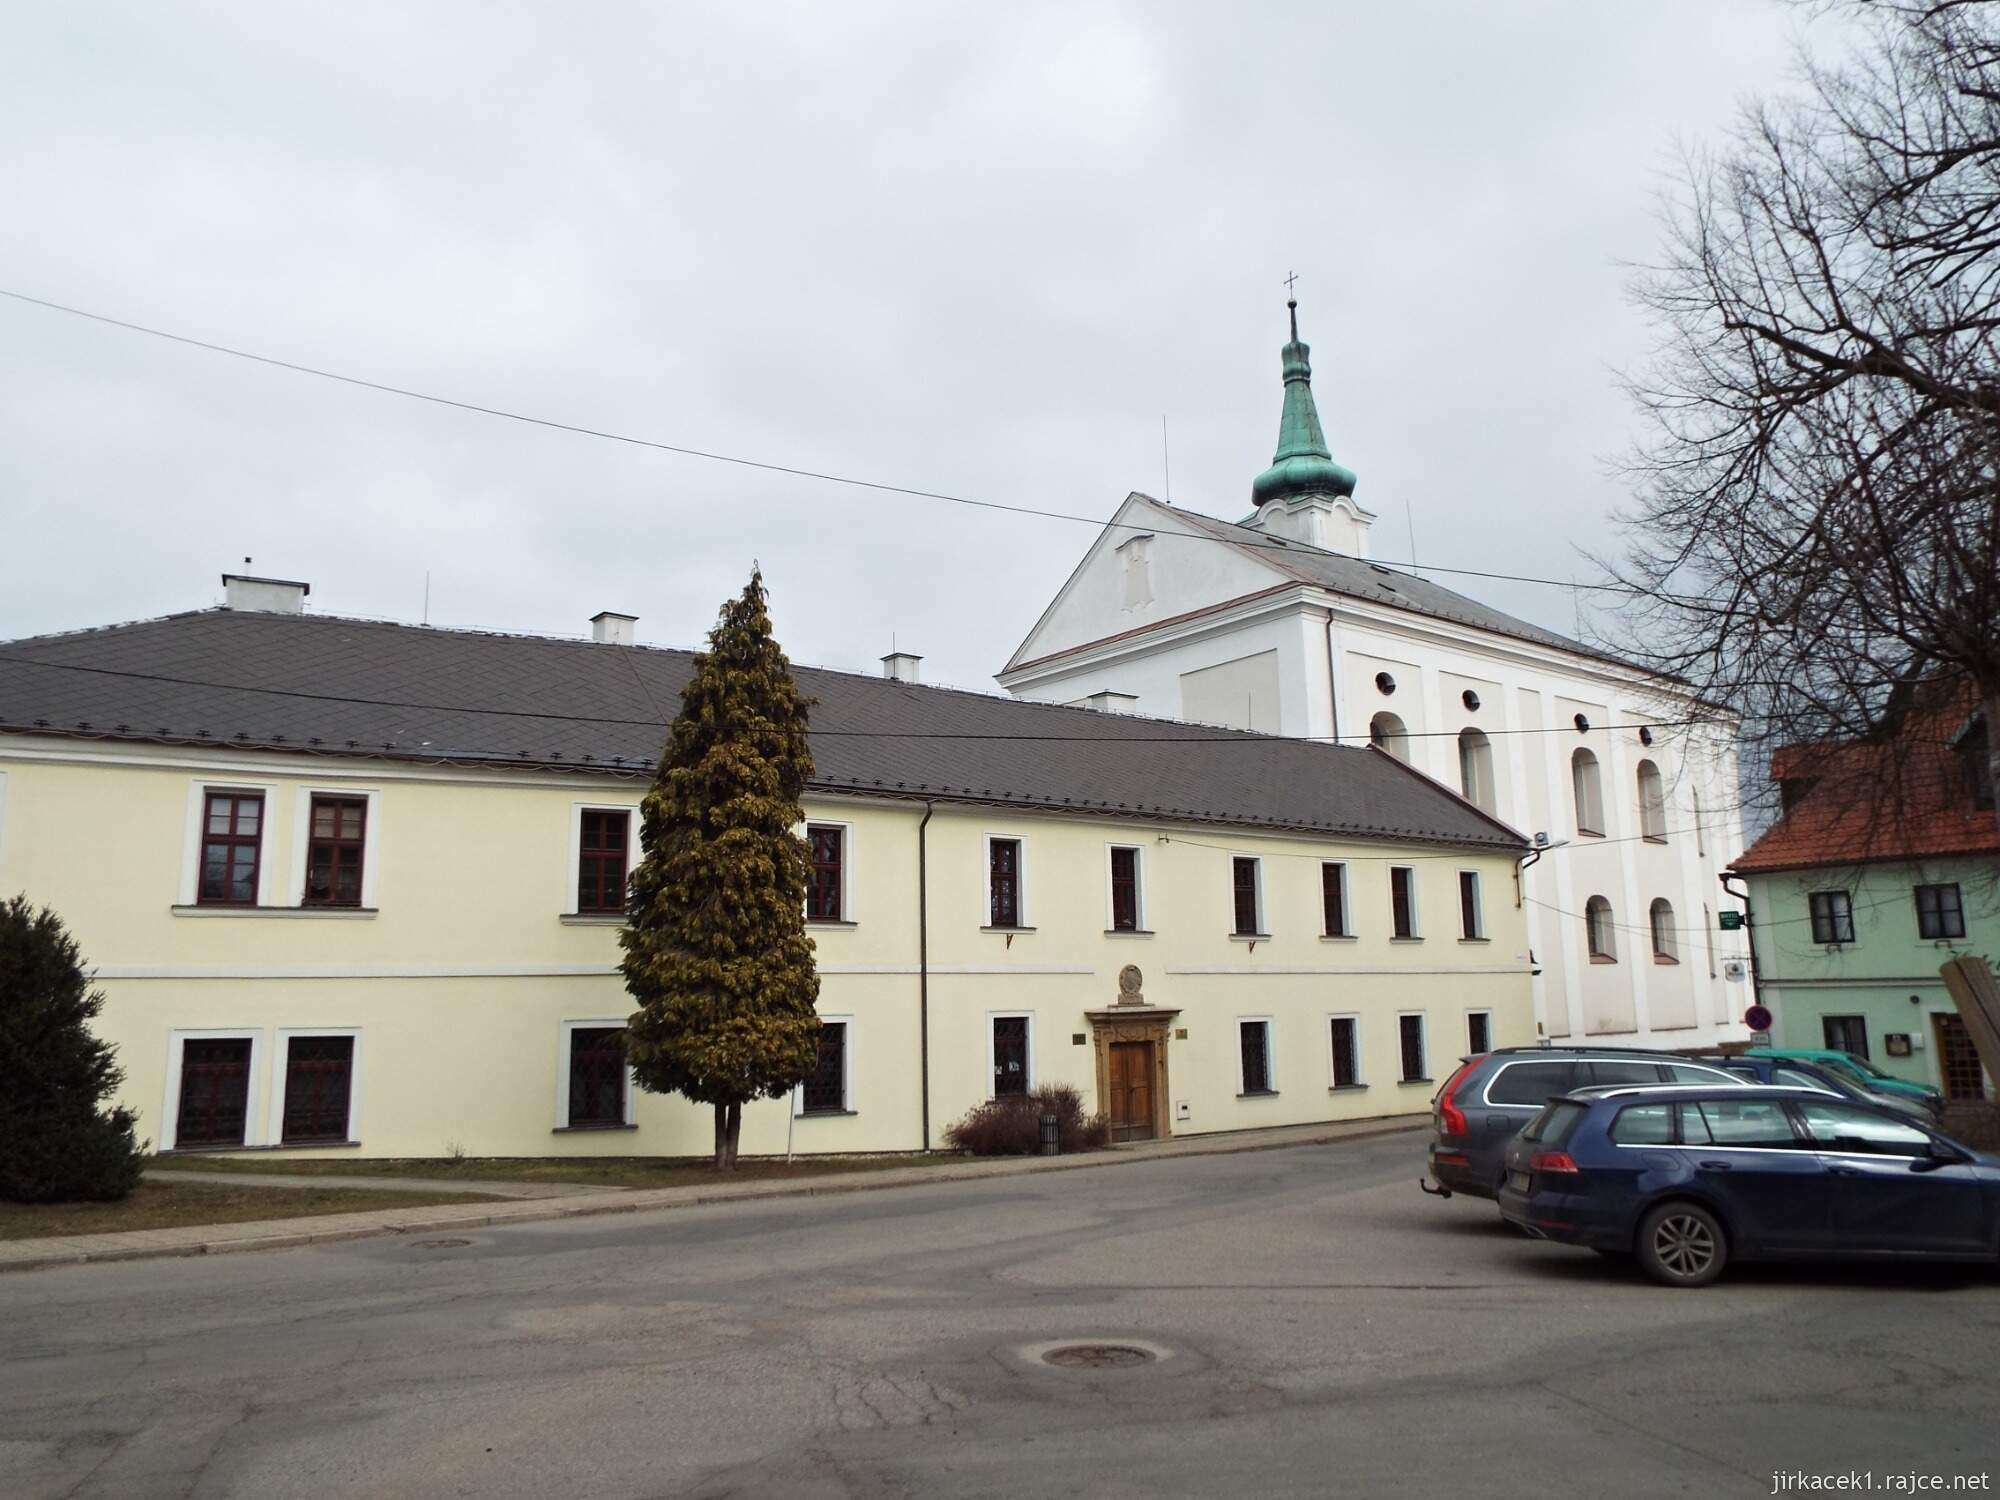 06 - Jevíčko - Kostel Nanebevzetí Panny Marie s klášterem Augustiánů 18